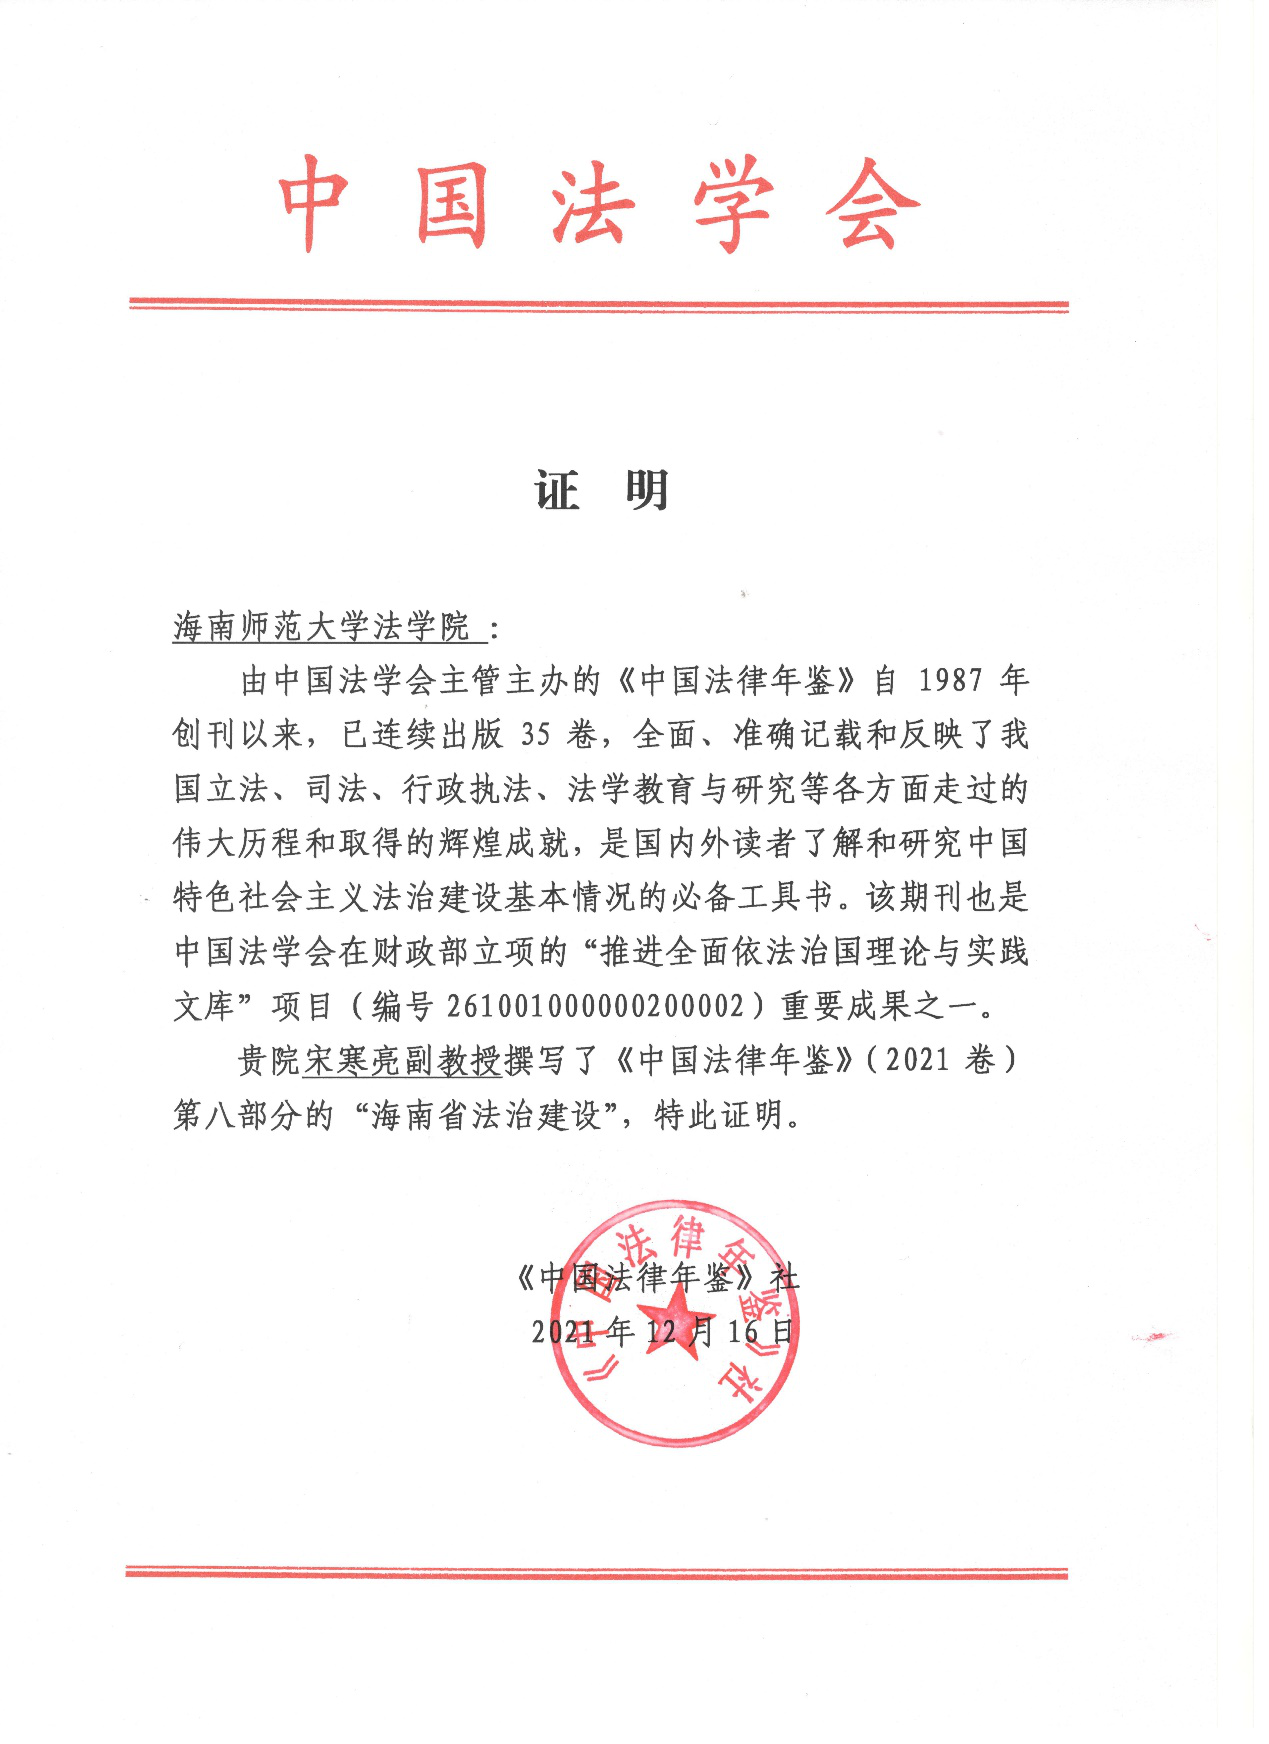 yl23411永利官网登录宋寒亮教师参与撰写《中国法律年鉴》